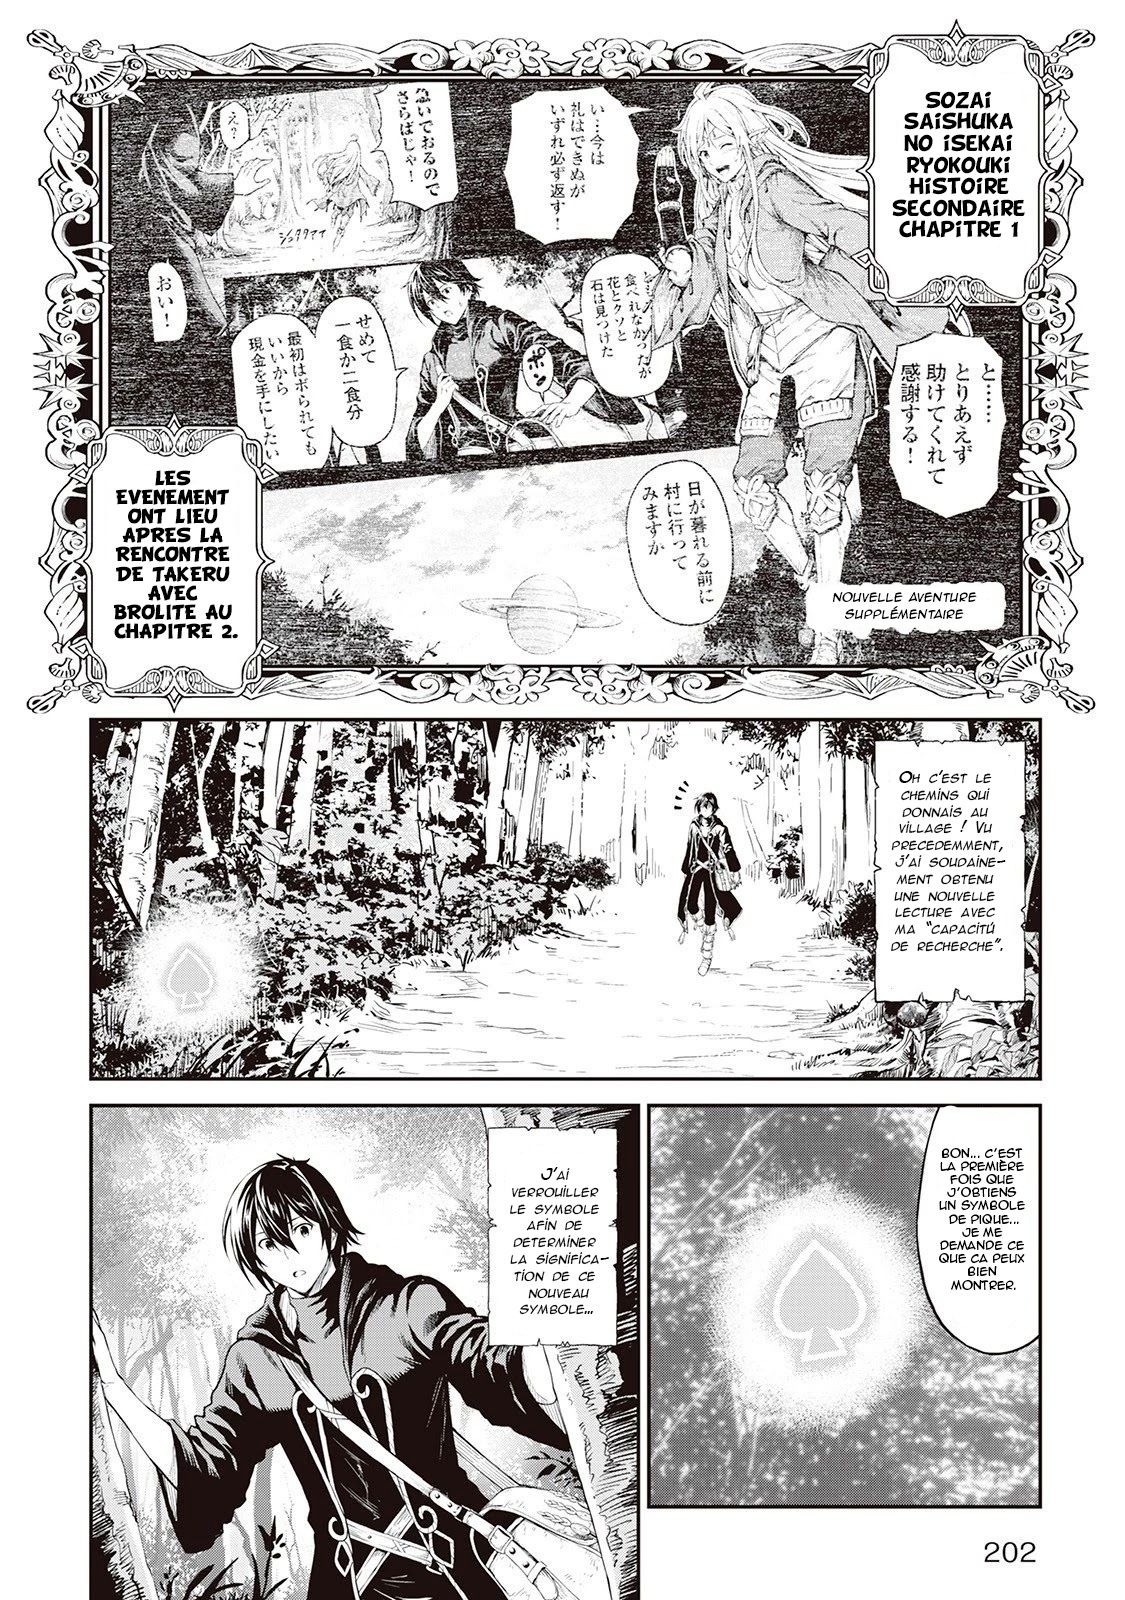 Souzai Saishuka No Isekai Ryokouki: Chapter 3 - Page 1